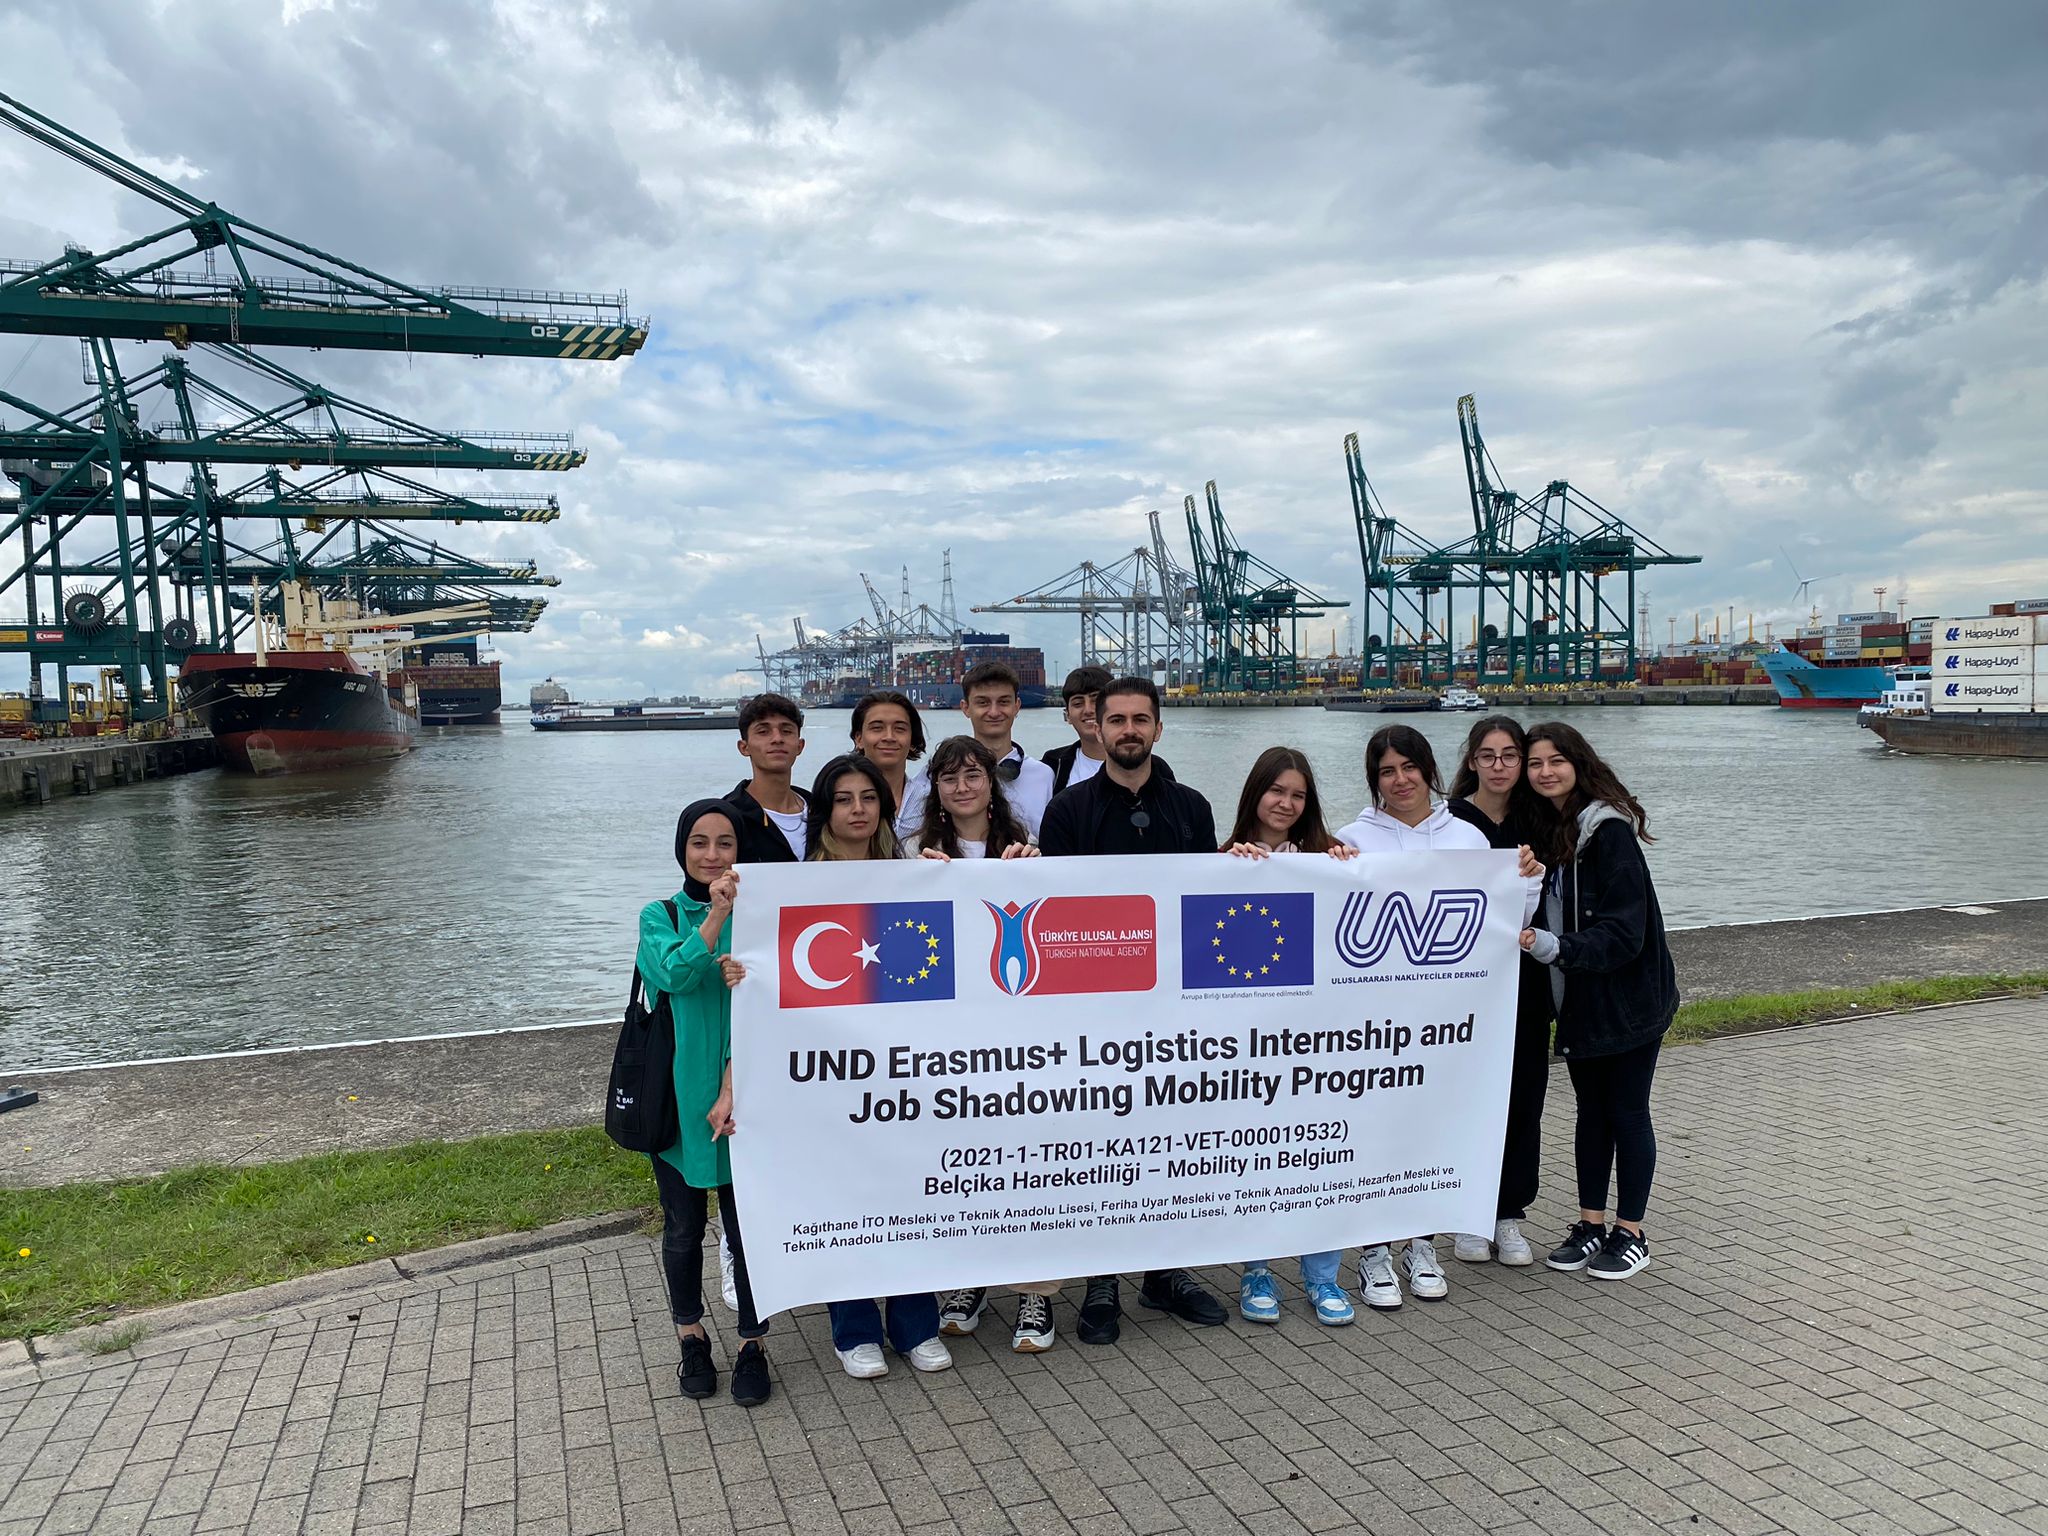 UND Erasmus + Yurtdışı Lojistik Staj ve İşbaşı Öğrenme Hareketliliği Programının İlk Dönemi 31 Ağustos’ta Sona Erdi 